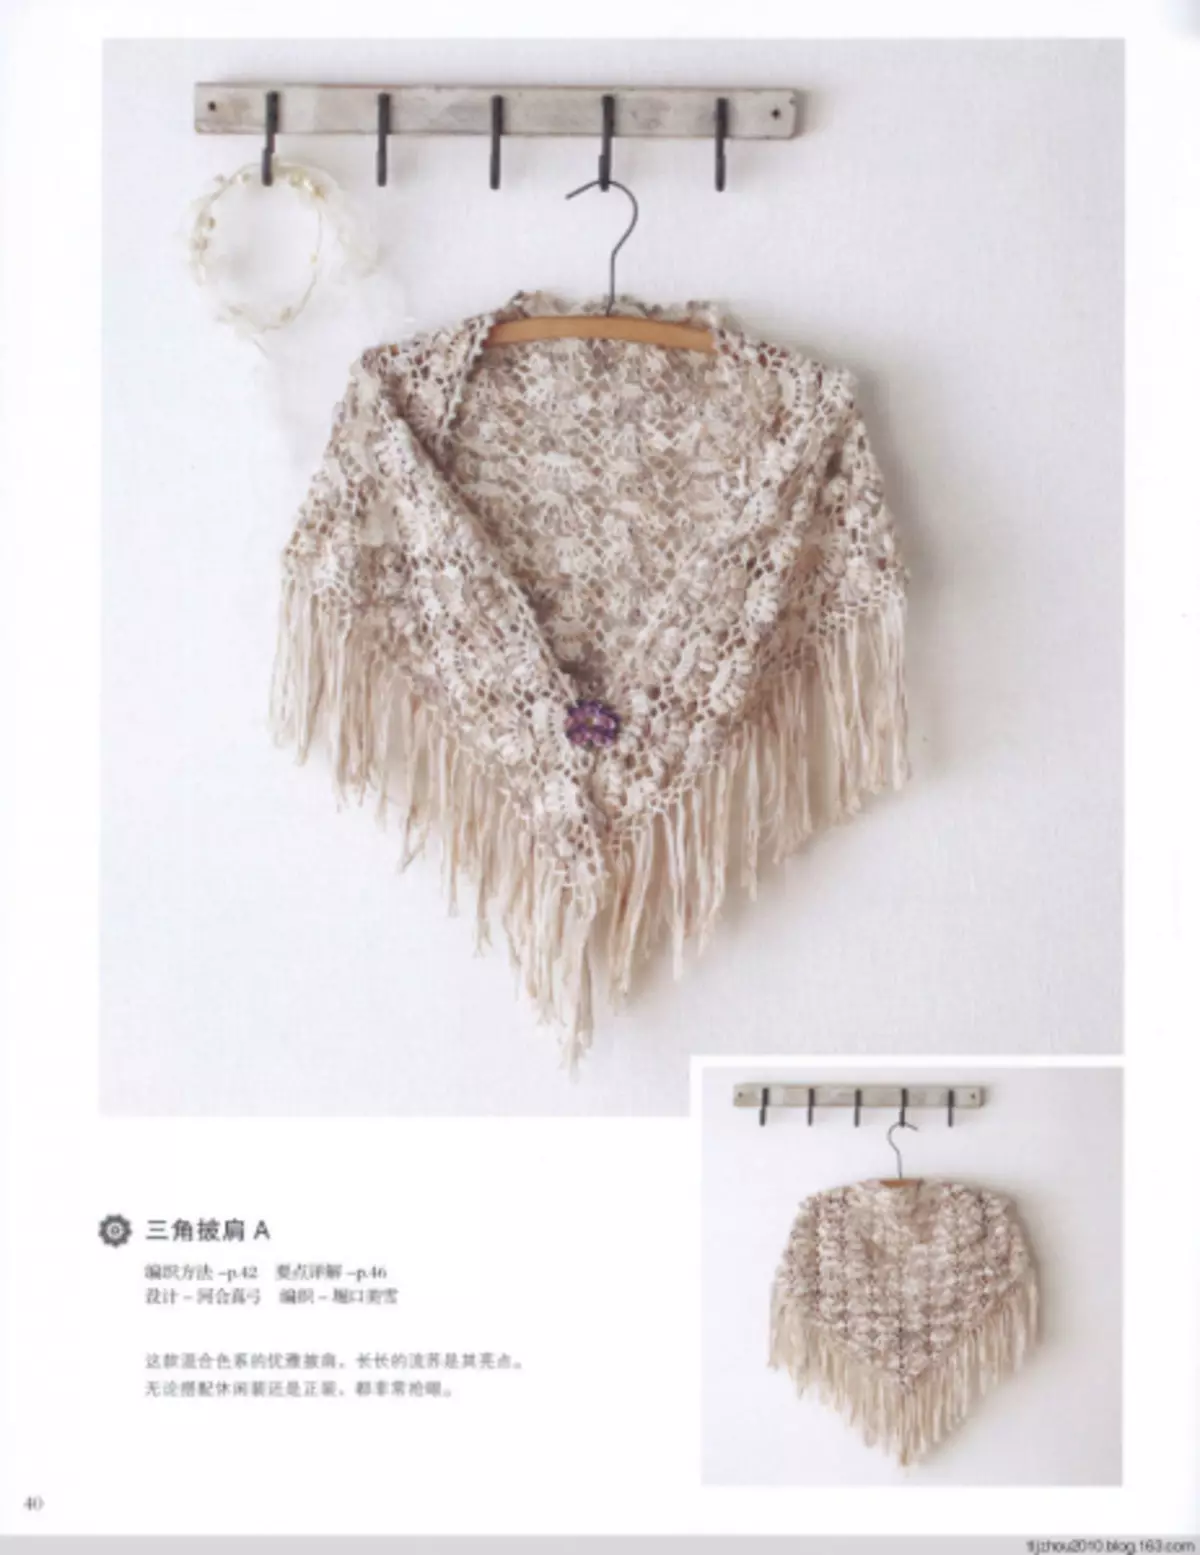 bolero, shawl និង crochet capochet cape